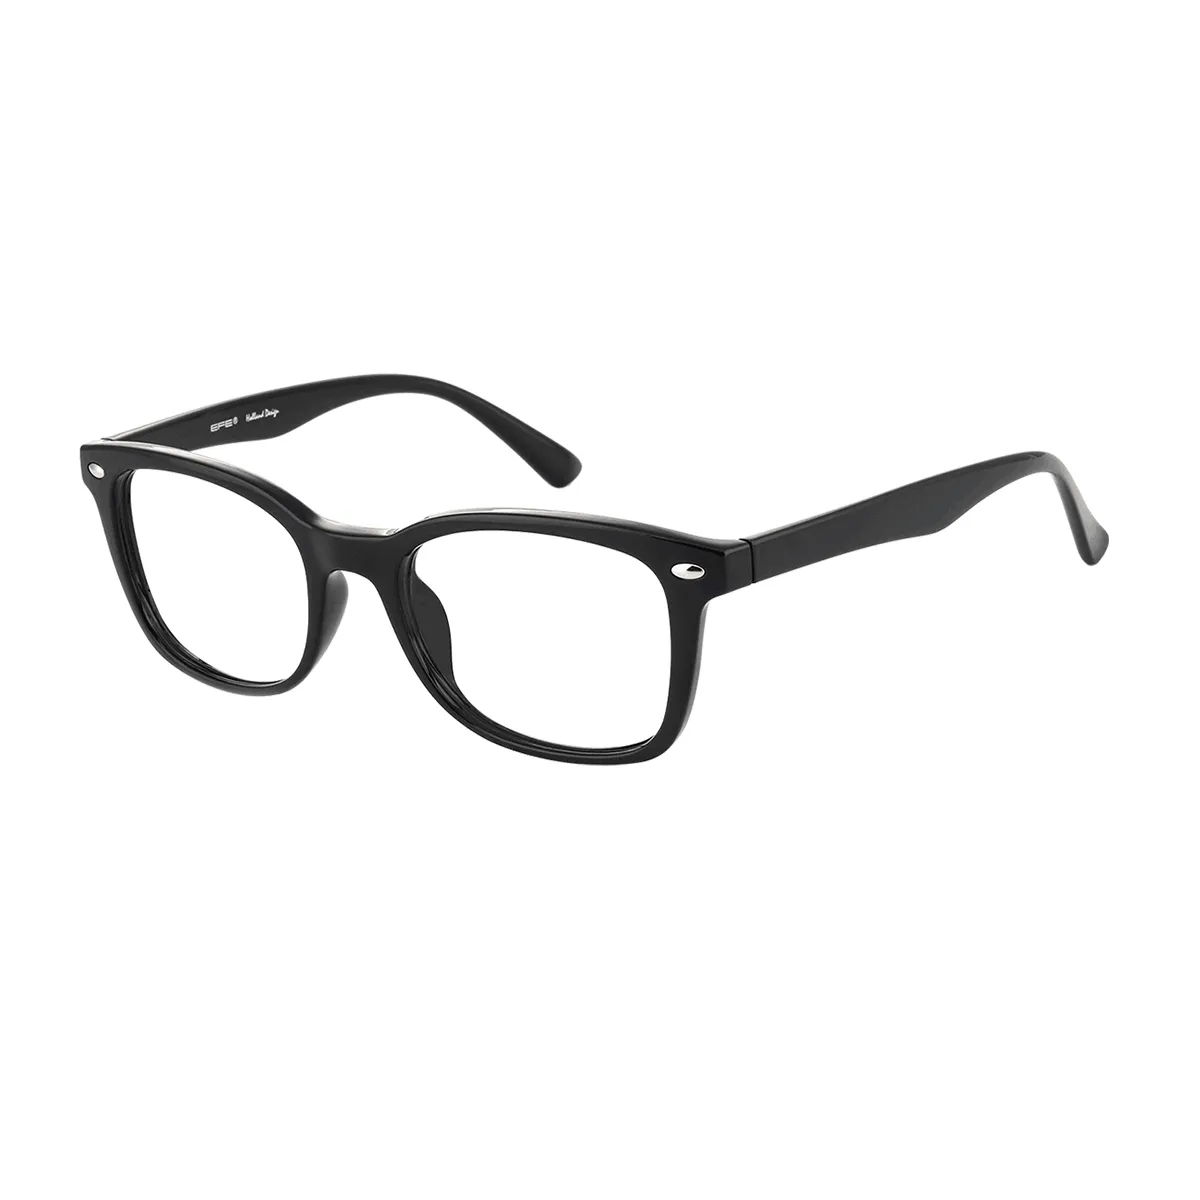 Wilbur - Rectangle Black Glasses for Men